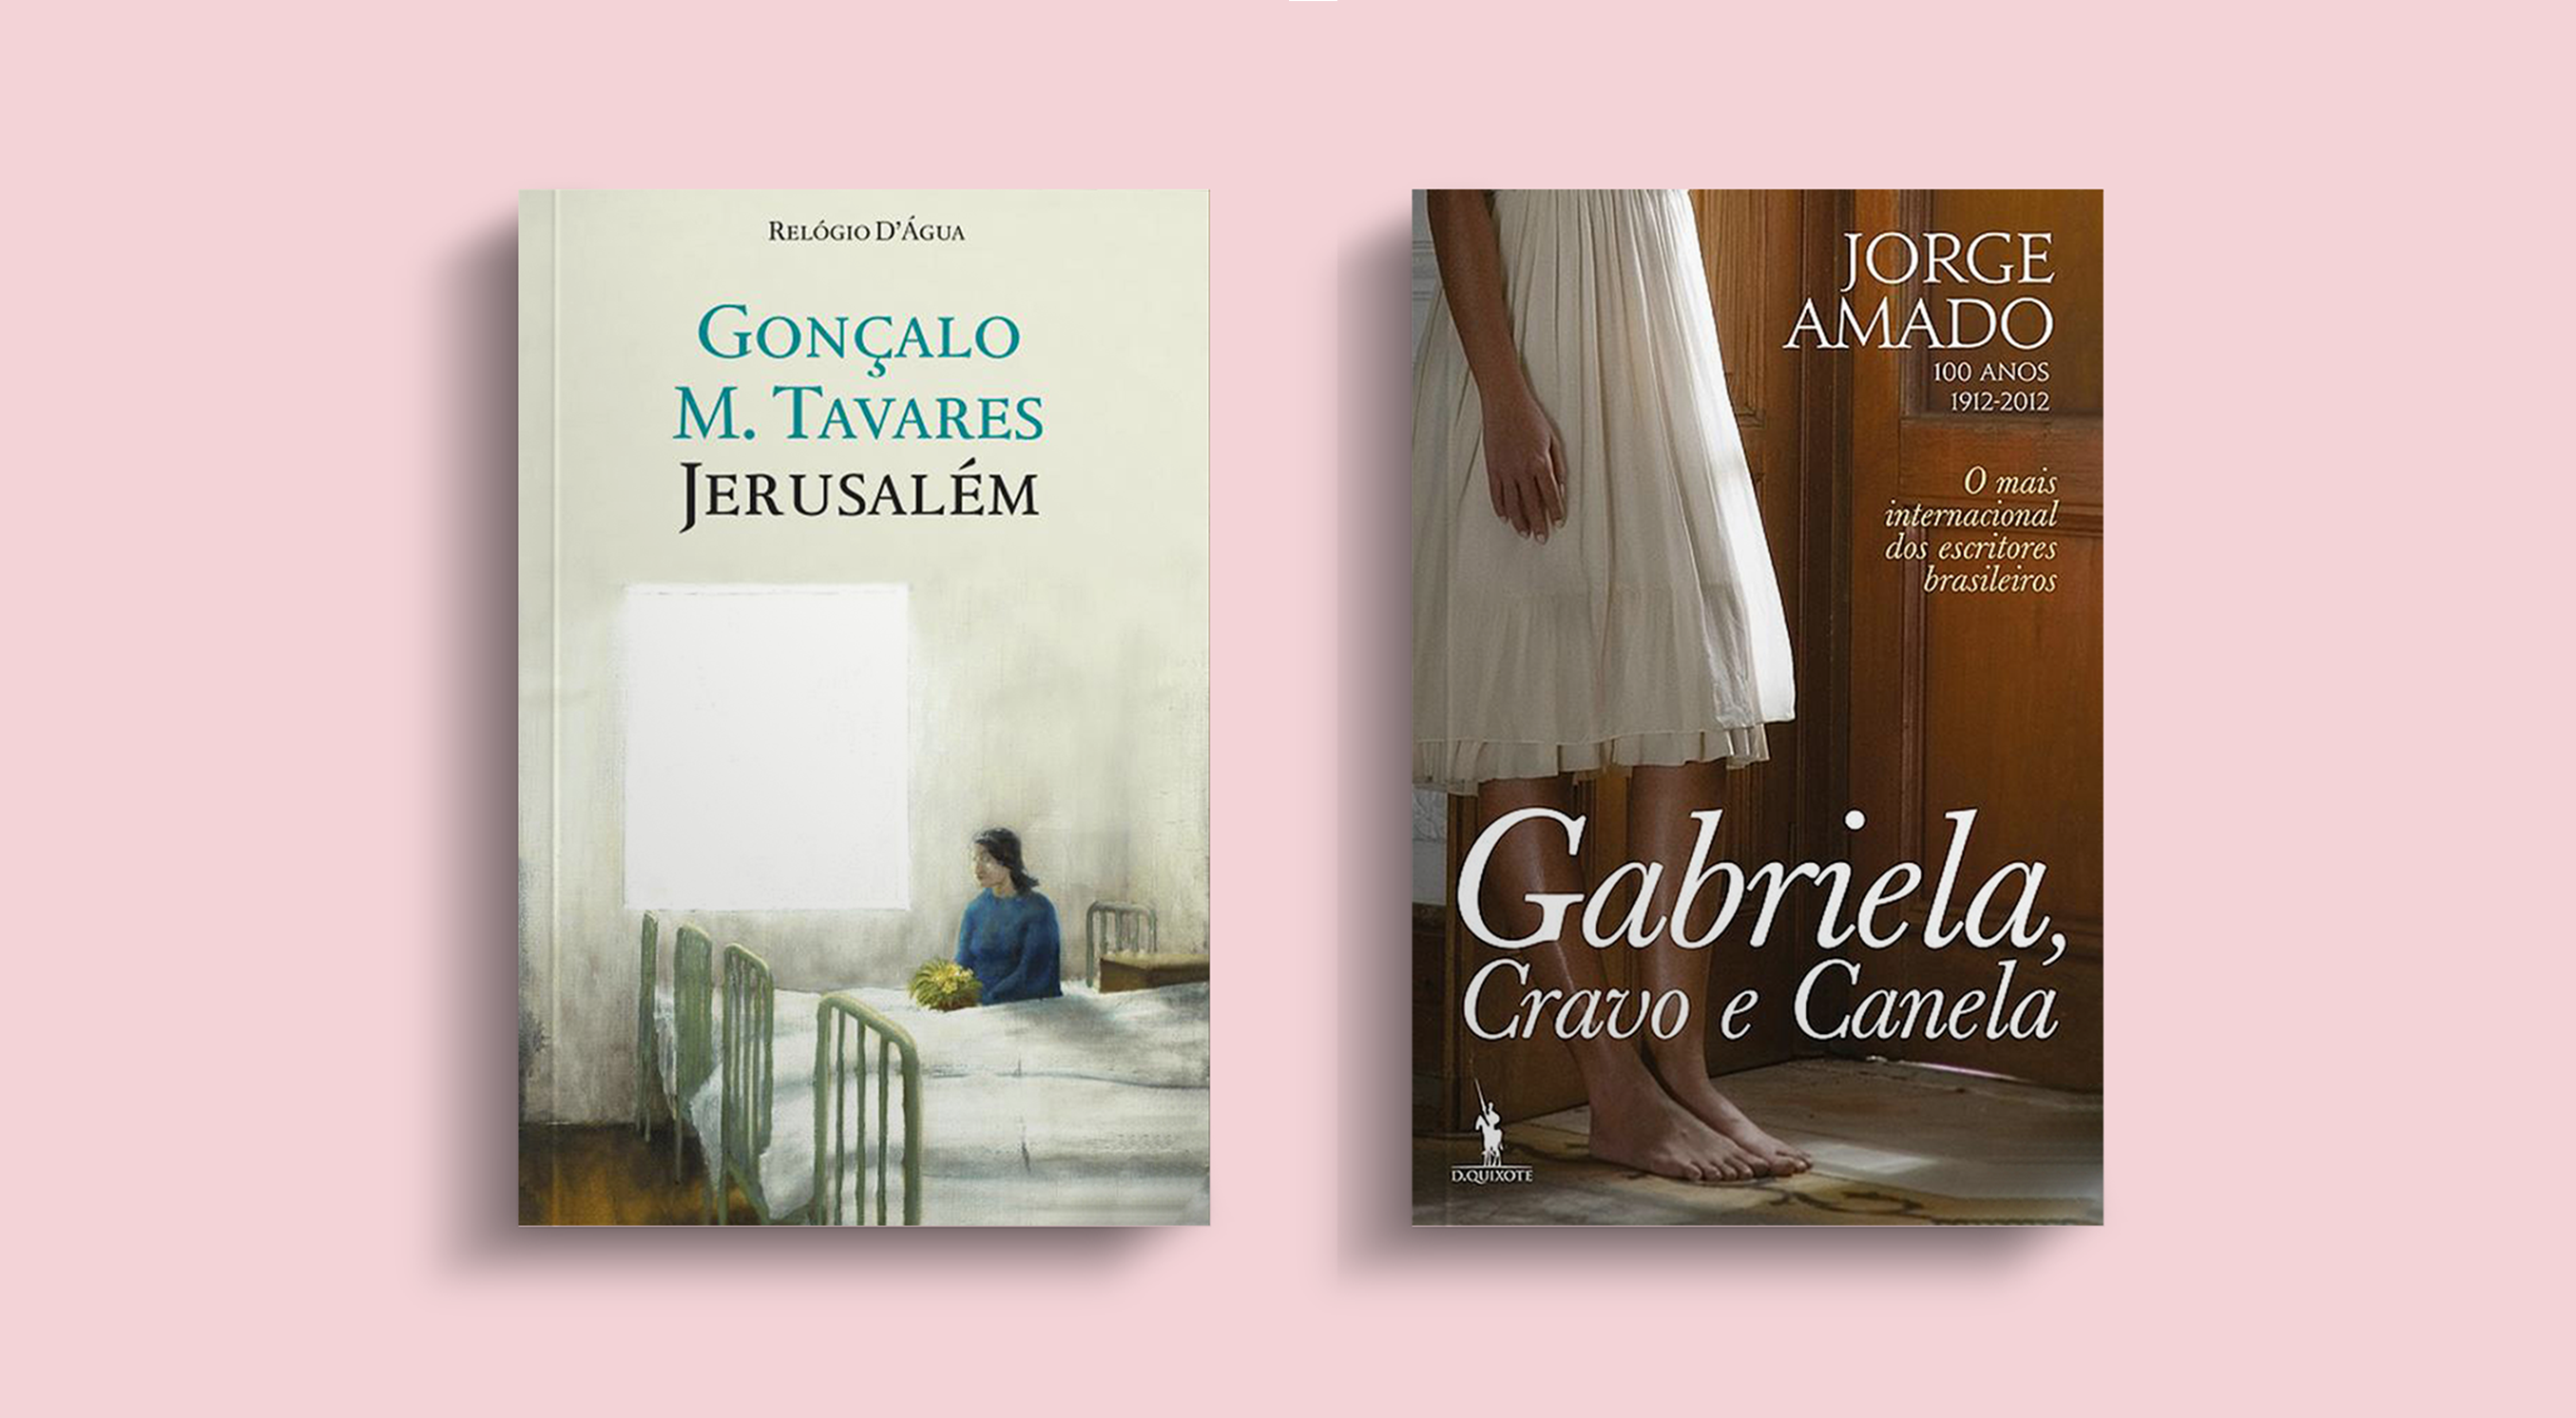 Livraria Lello suggests.."Gabriela Cravo e Canela", Jorge Amado and "Jerusalém", Gonçalo M. Tavares